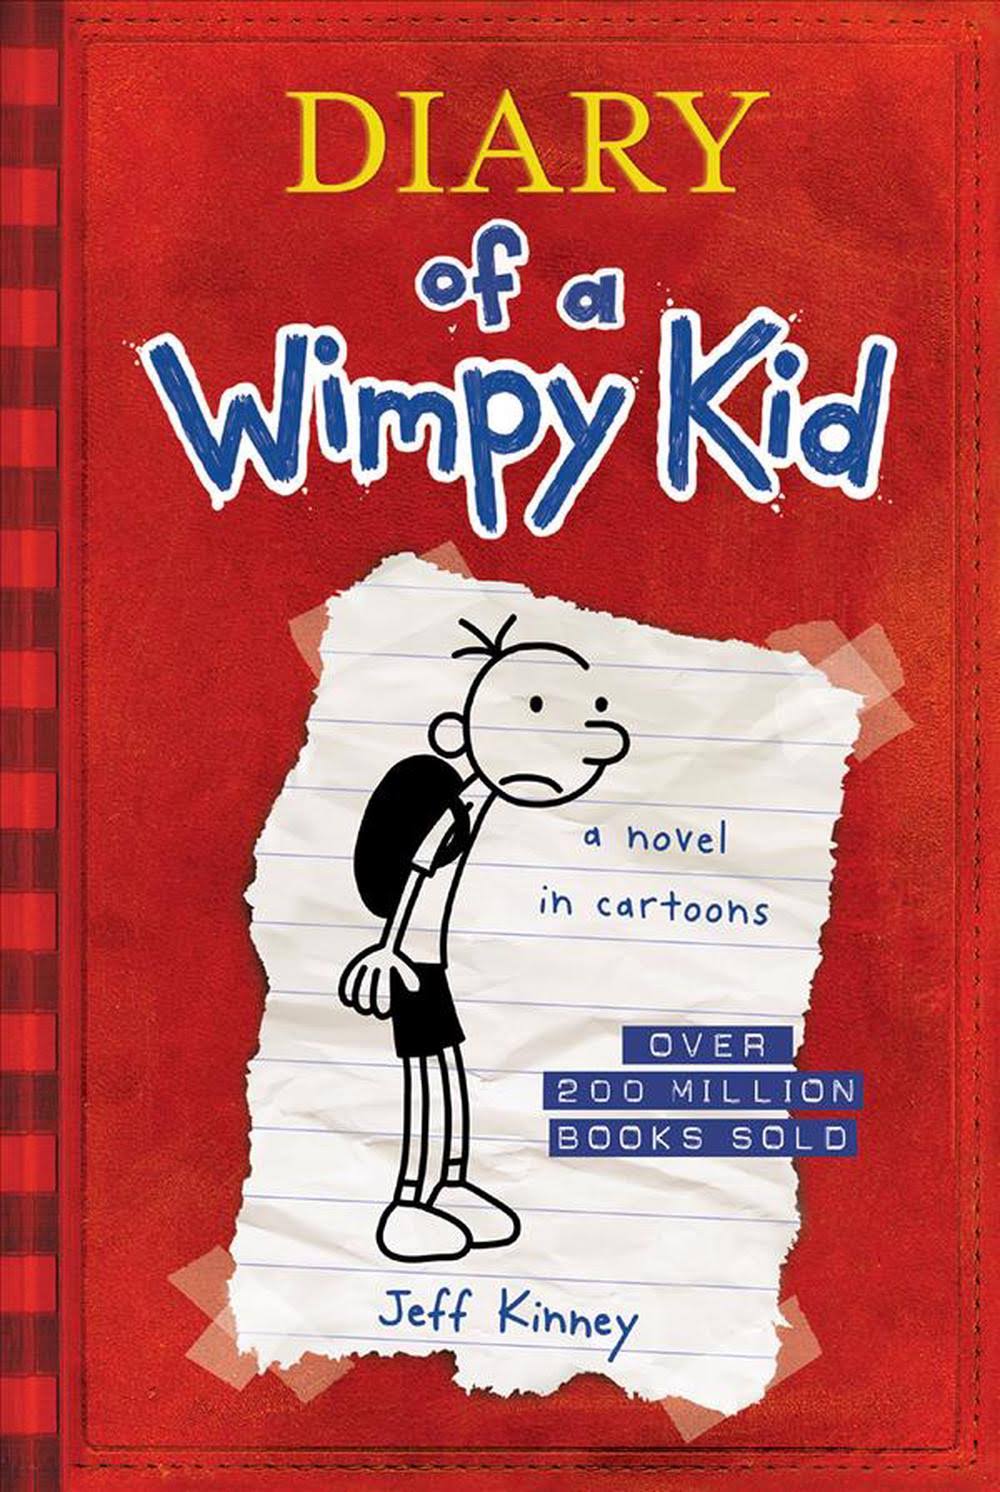 Diary of a Wimpy Kid (Diary of a Wimpy Kid #1) [Book]